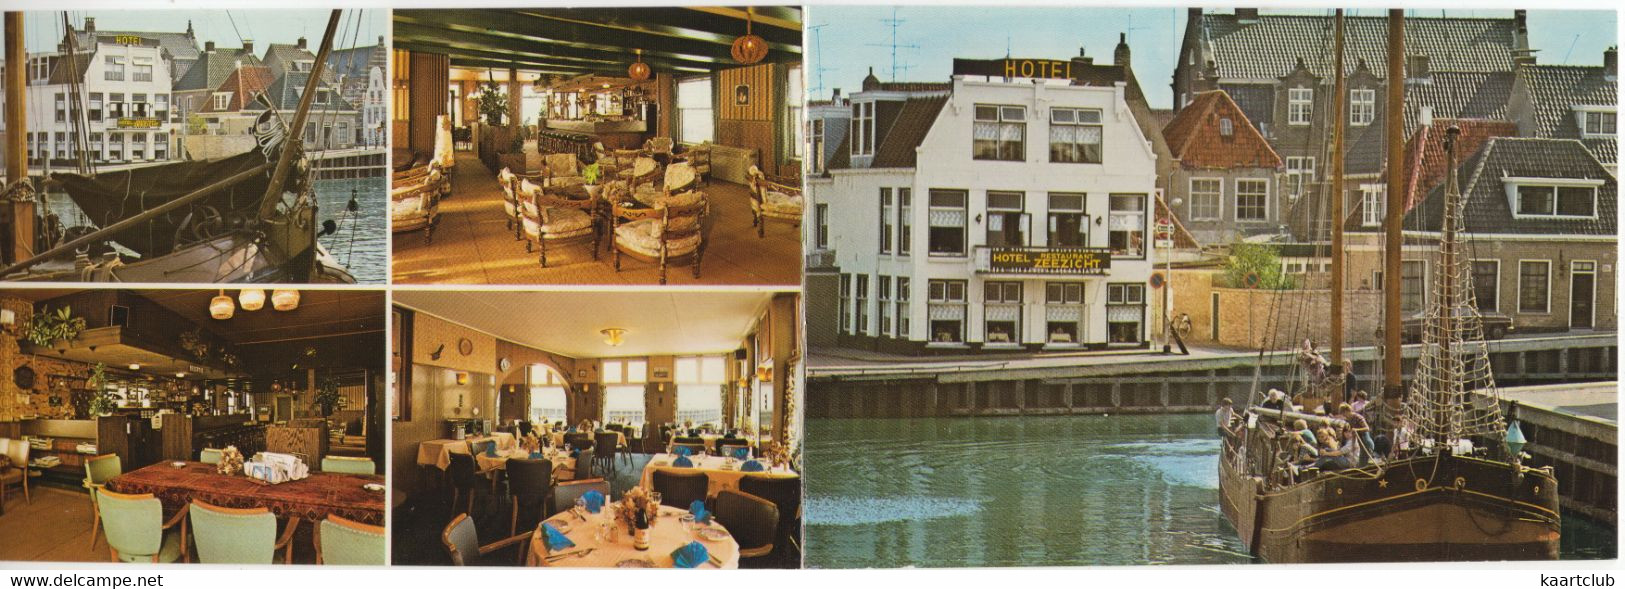 Harlingen - Hotel Café Restaurant 'Zeezicht', Zuiderhaven 1 - (Friesland) - In- & Exterieur - (2x 15 Cm X 10.5 Cm) - Harlingen